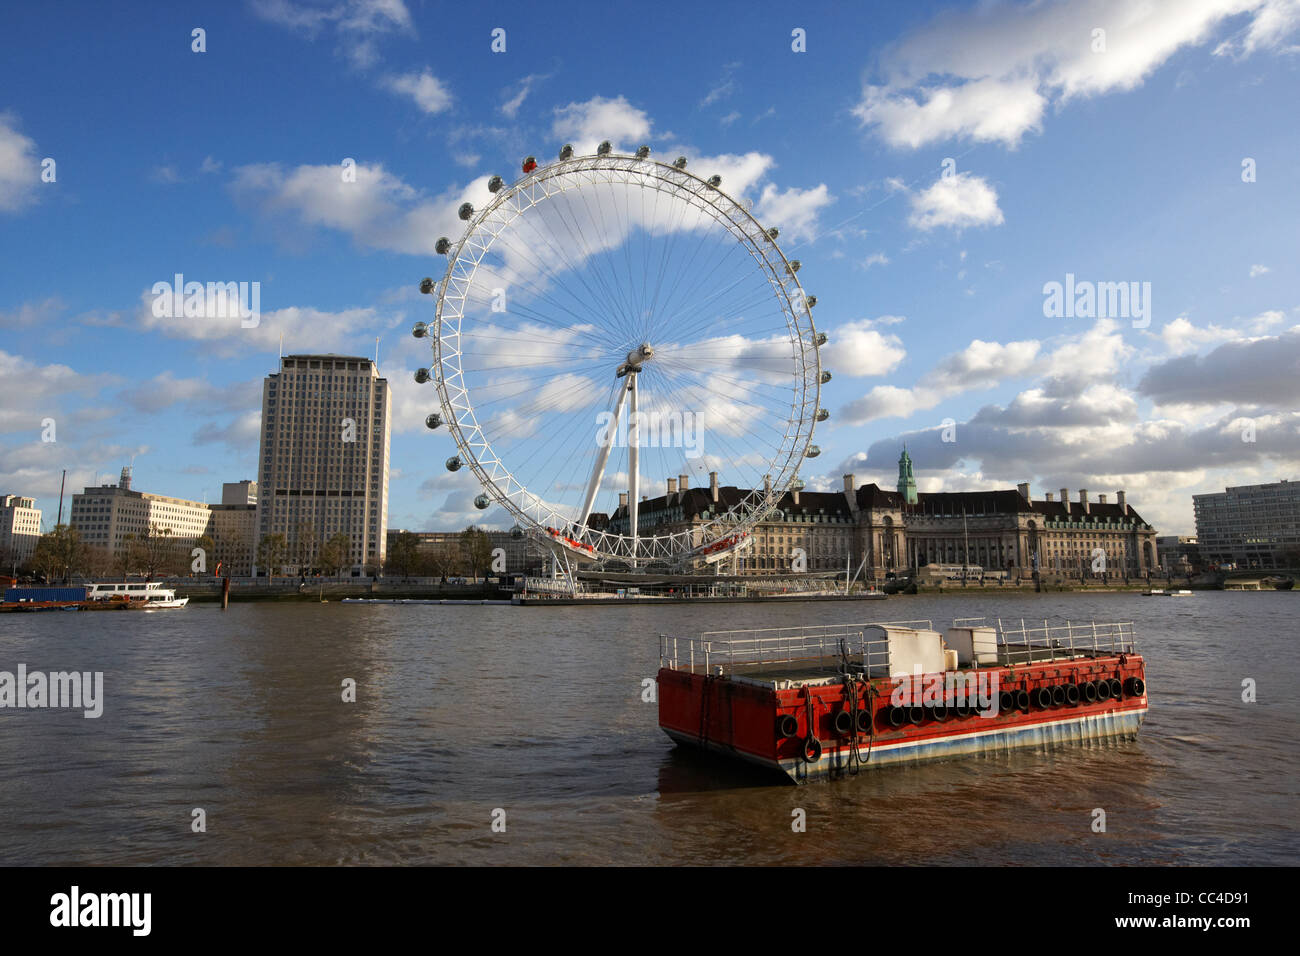 Blick auf den Fluss Themse Südufer Shell Hauptsitz London Auge und County Hall von Victoria Embankment, London England UK Stockfoto